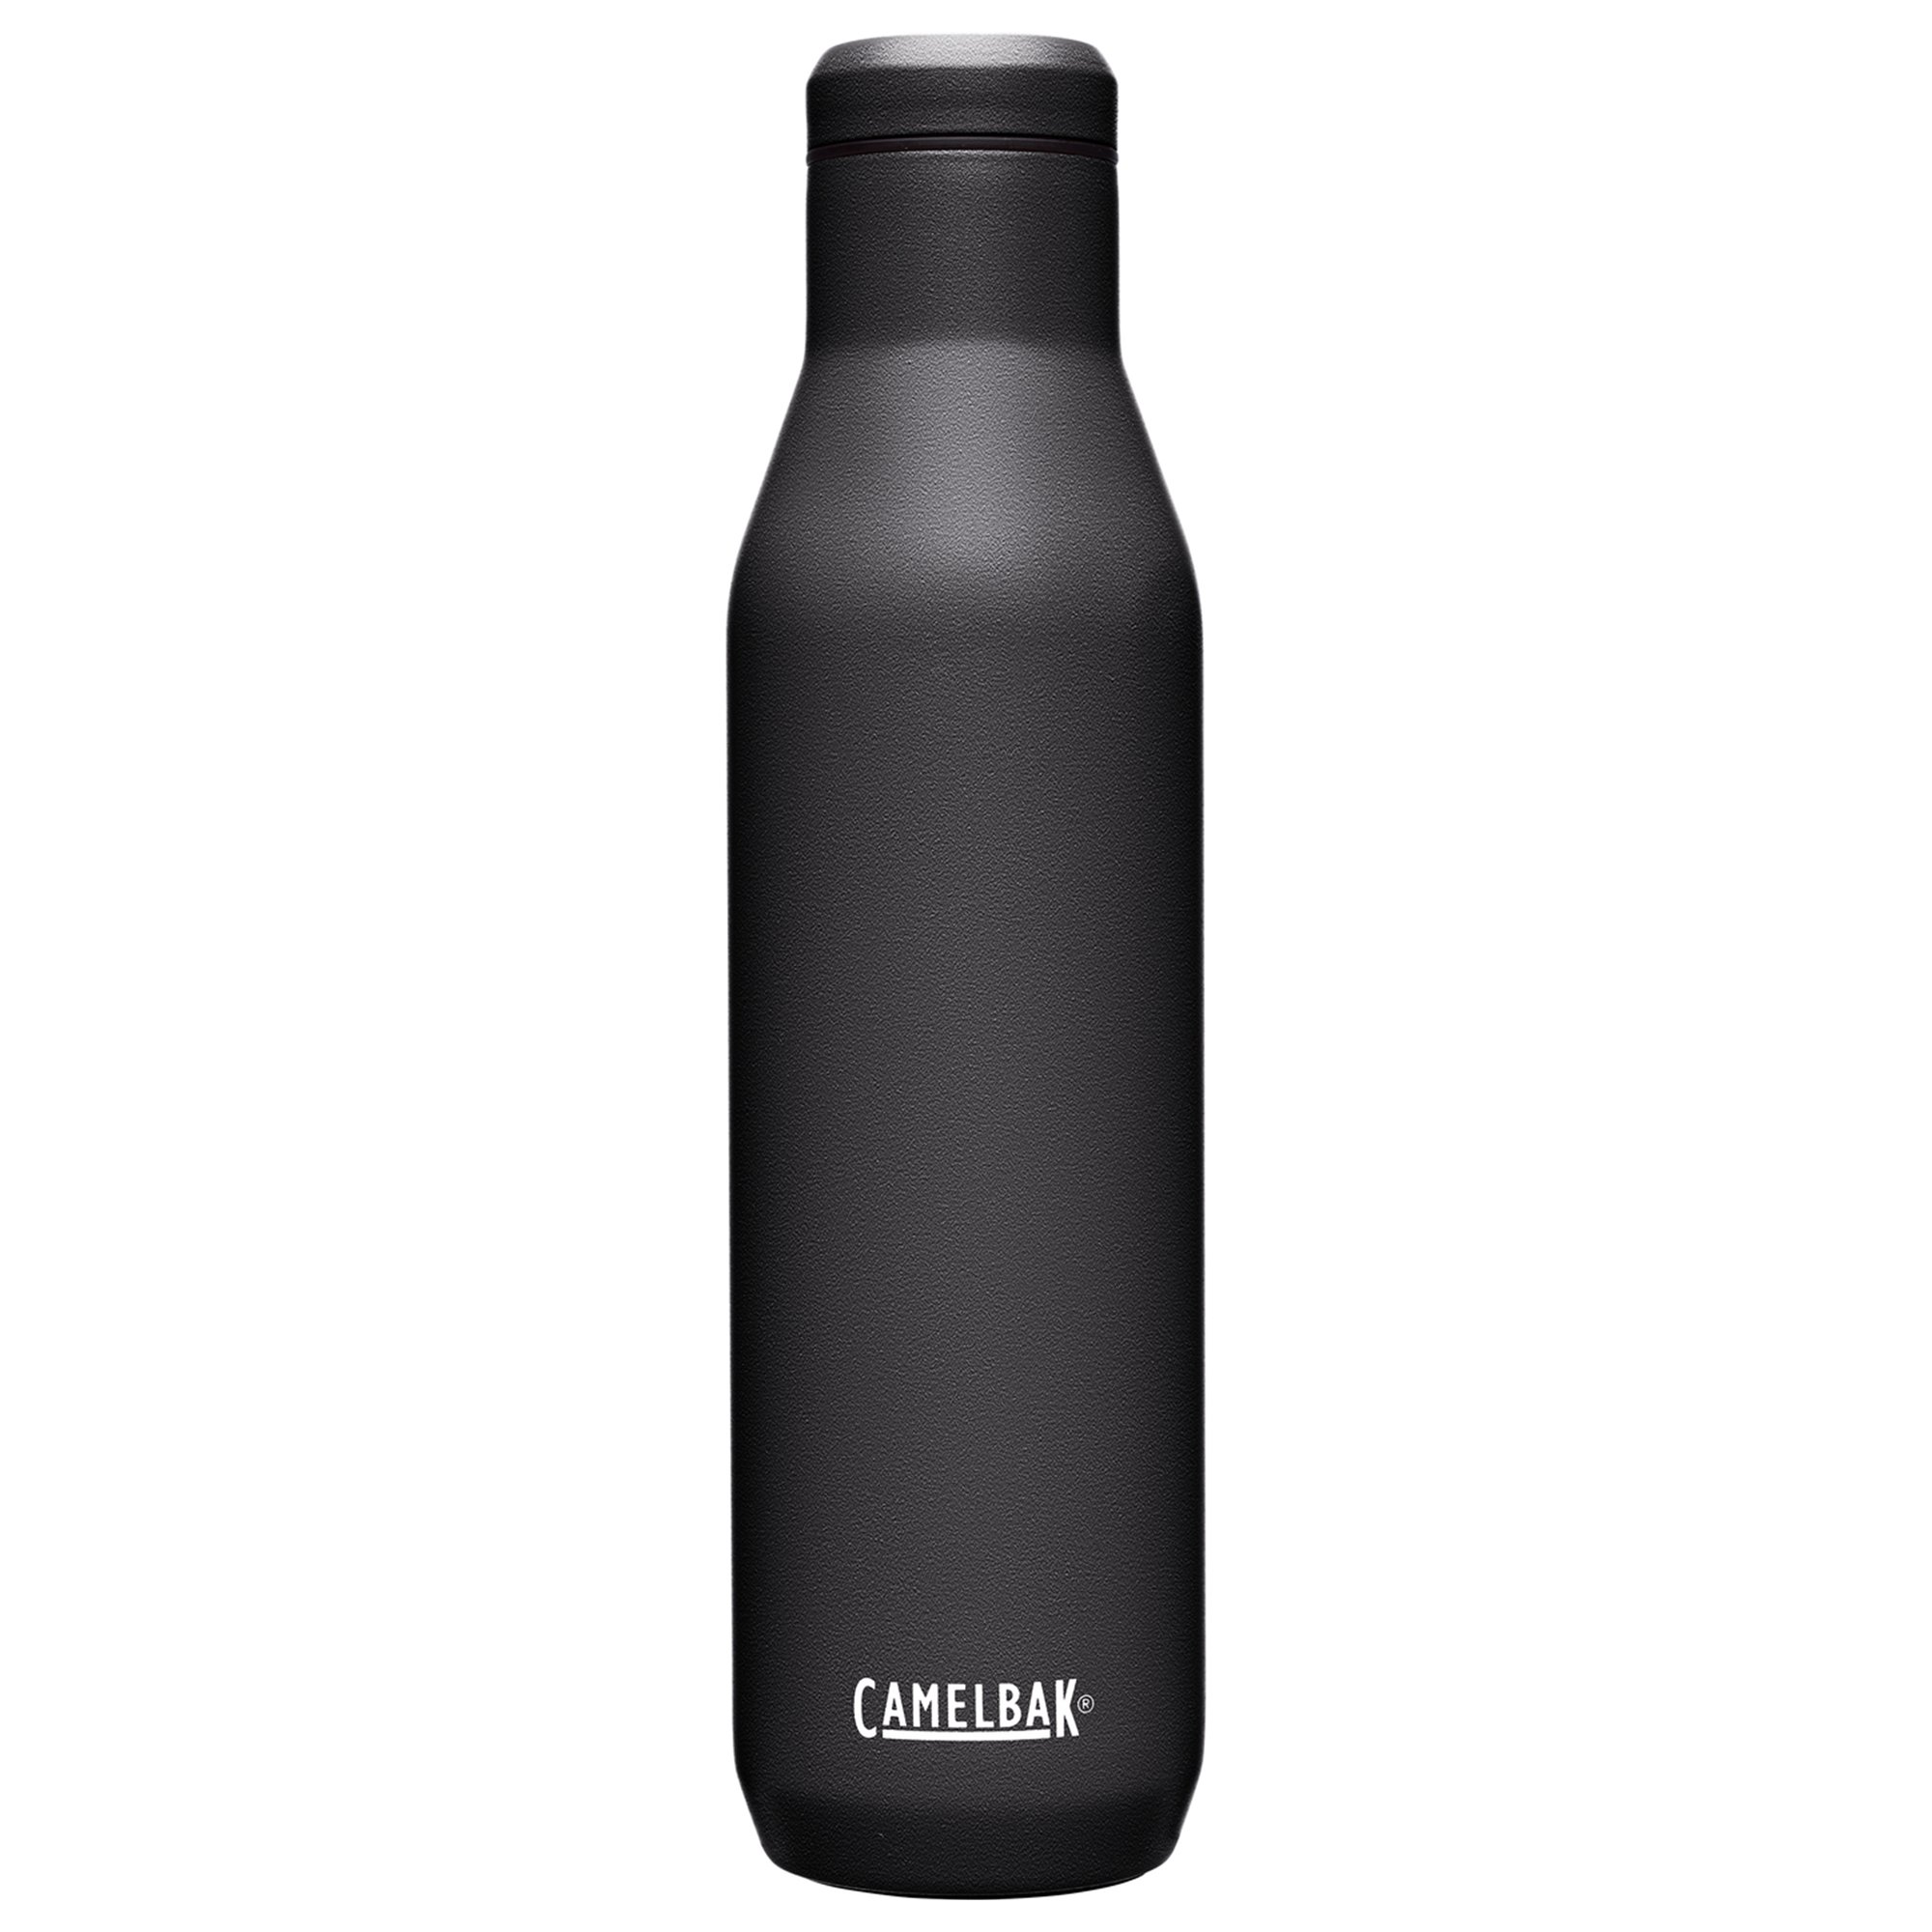 Camelbak Drikkeflaske 0.75 liter, black Drikkeflaske